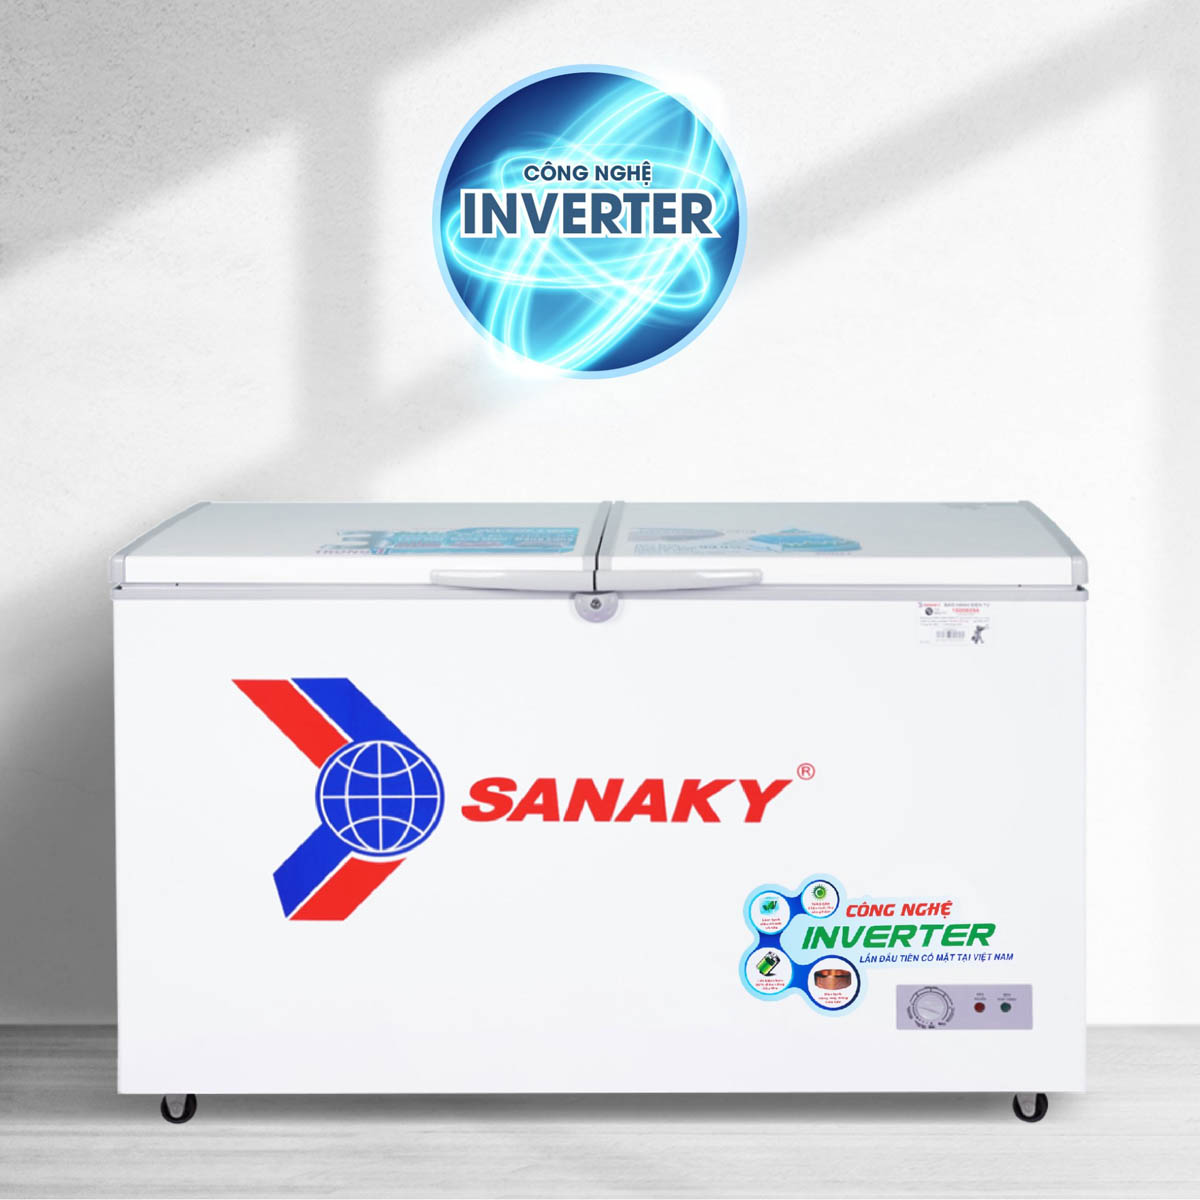 Tủ Đông Sanaky VH-3699A3 được tích hợp công nghệ Inverter tiết kiệm điện